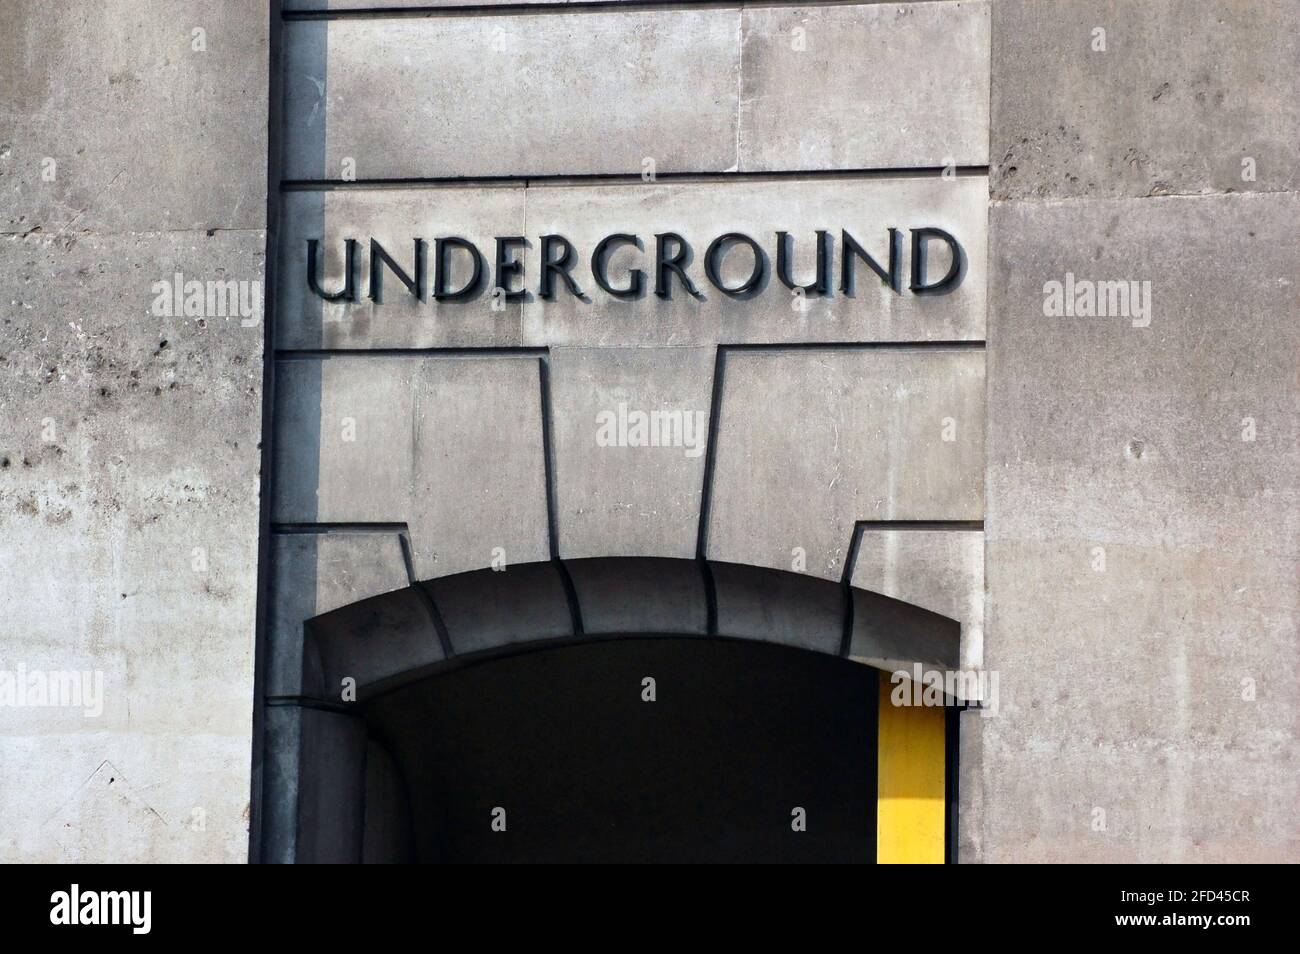 Ein Eingang zum Londoner Bahnnetz, allgemein bekannt als die "U-Bahn". Dieser Eingang befindet sich unter der Bank of England in der City of London. Stockfoto